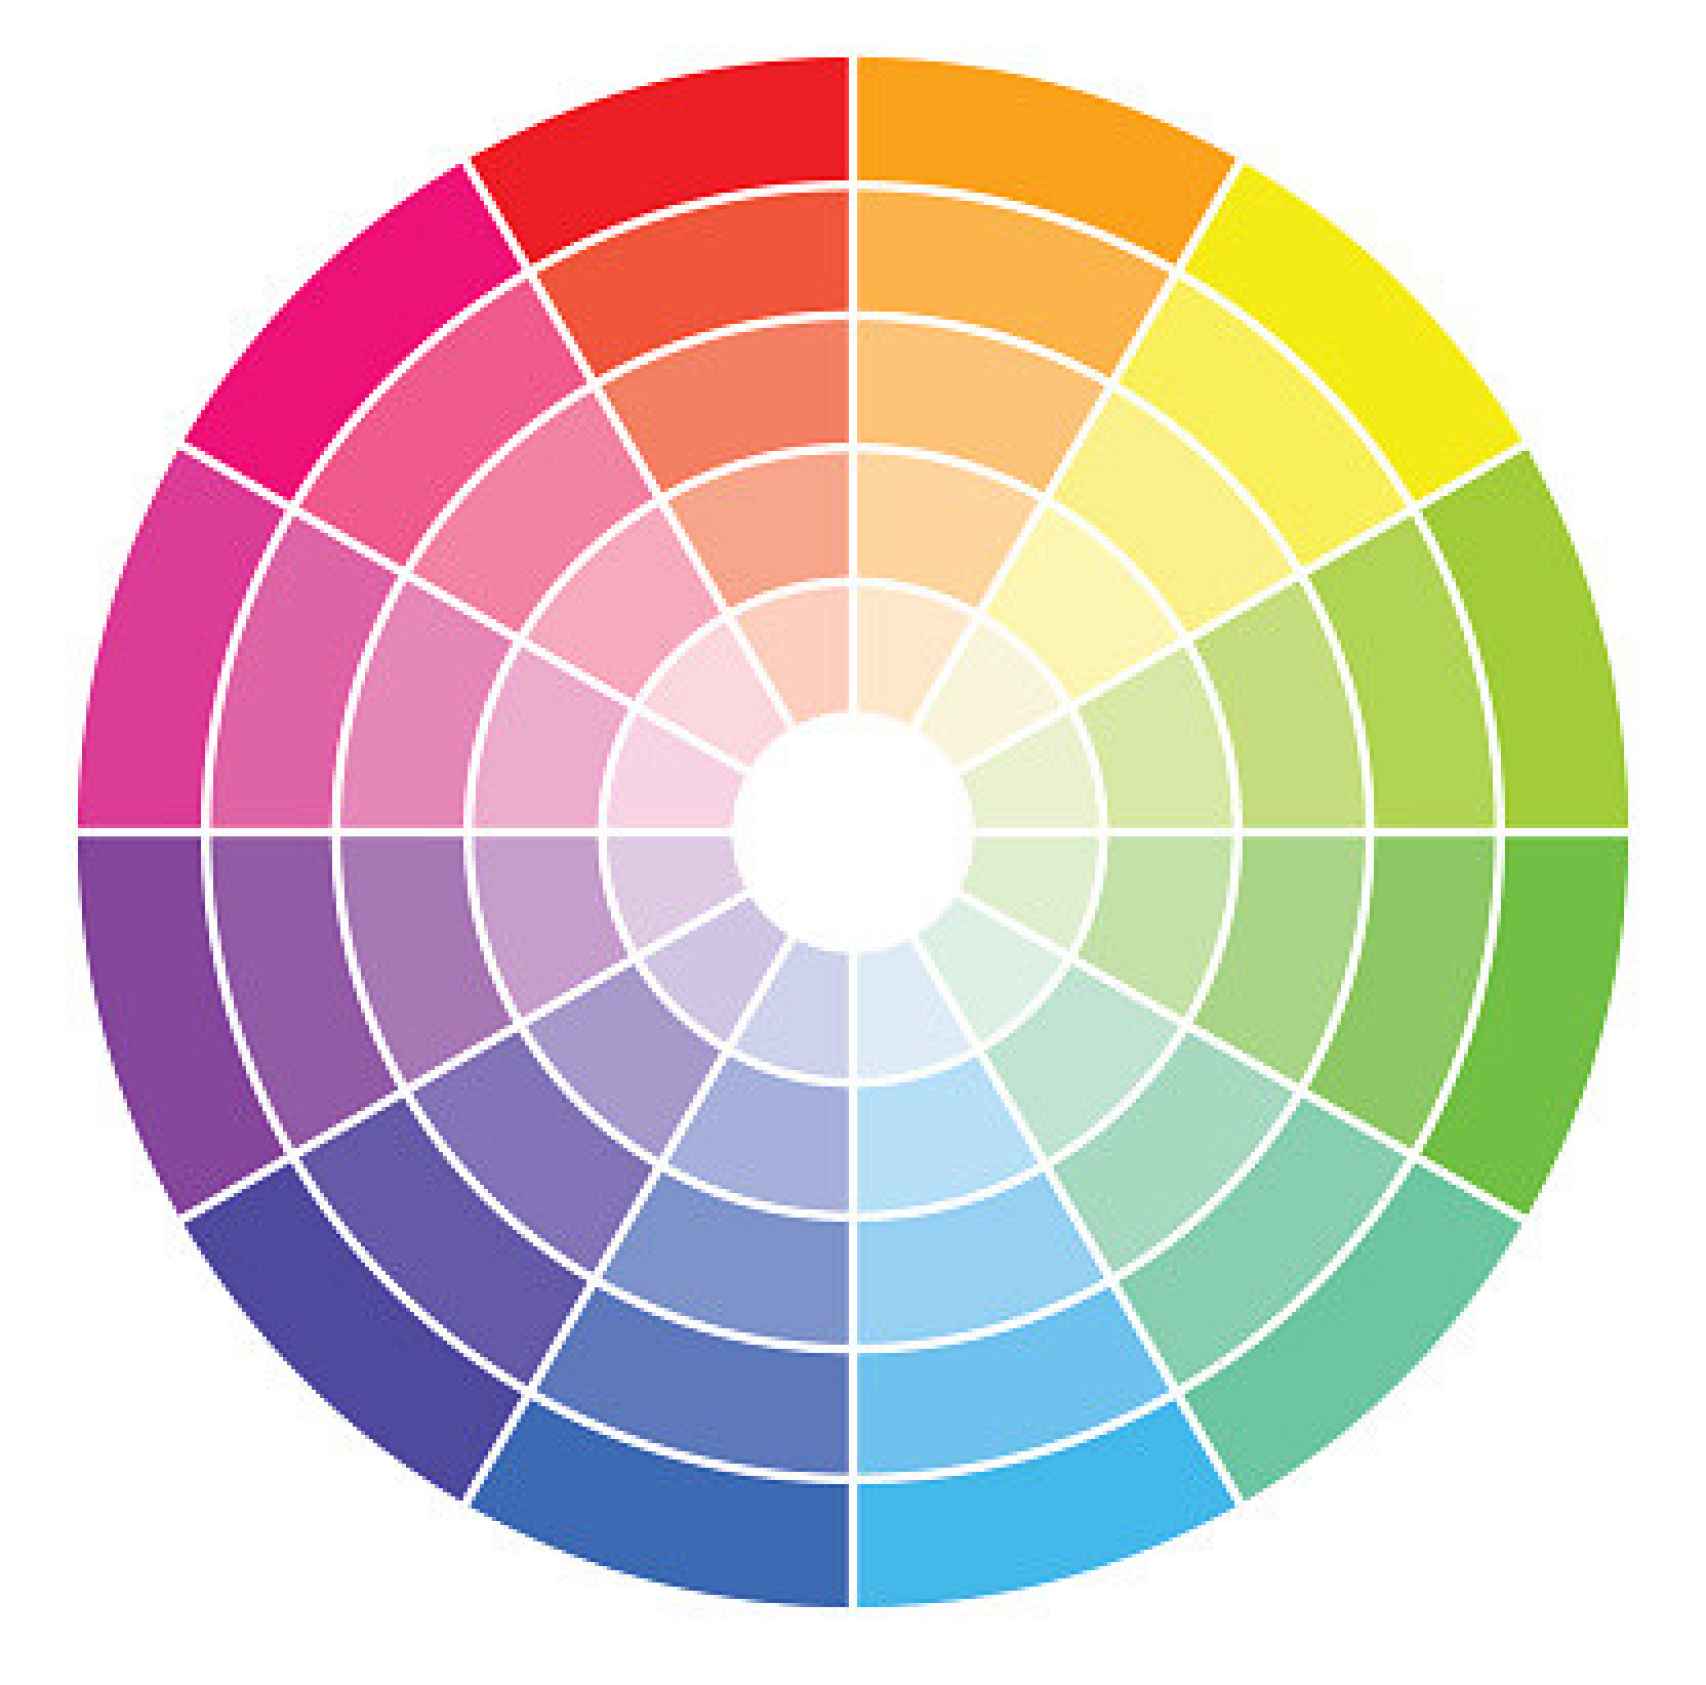 Para averiguar el color que mejor va contigo solo tienes que identificar tu tono de ojos en el círculo cromático.